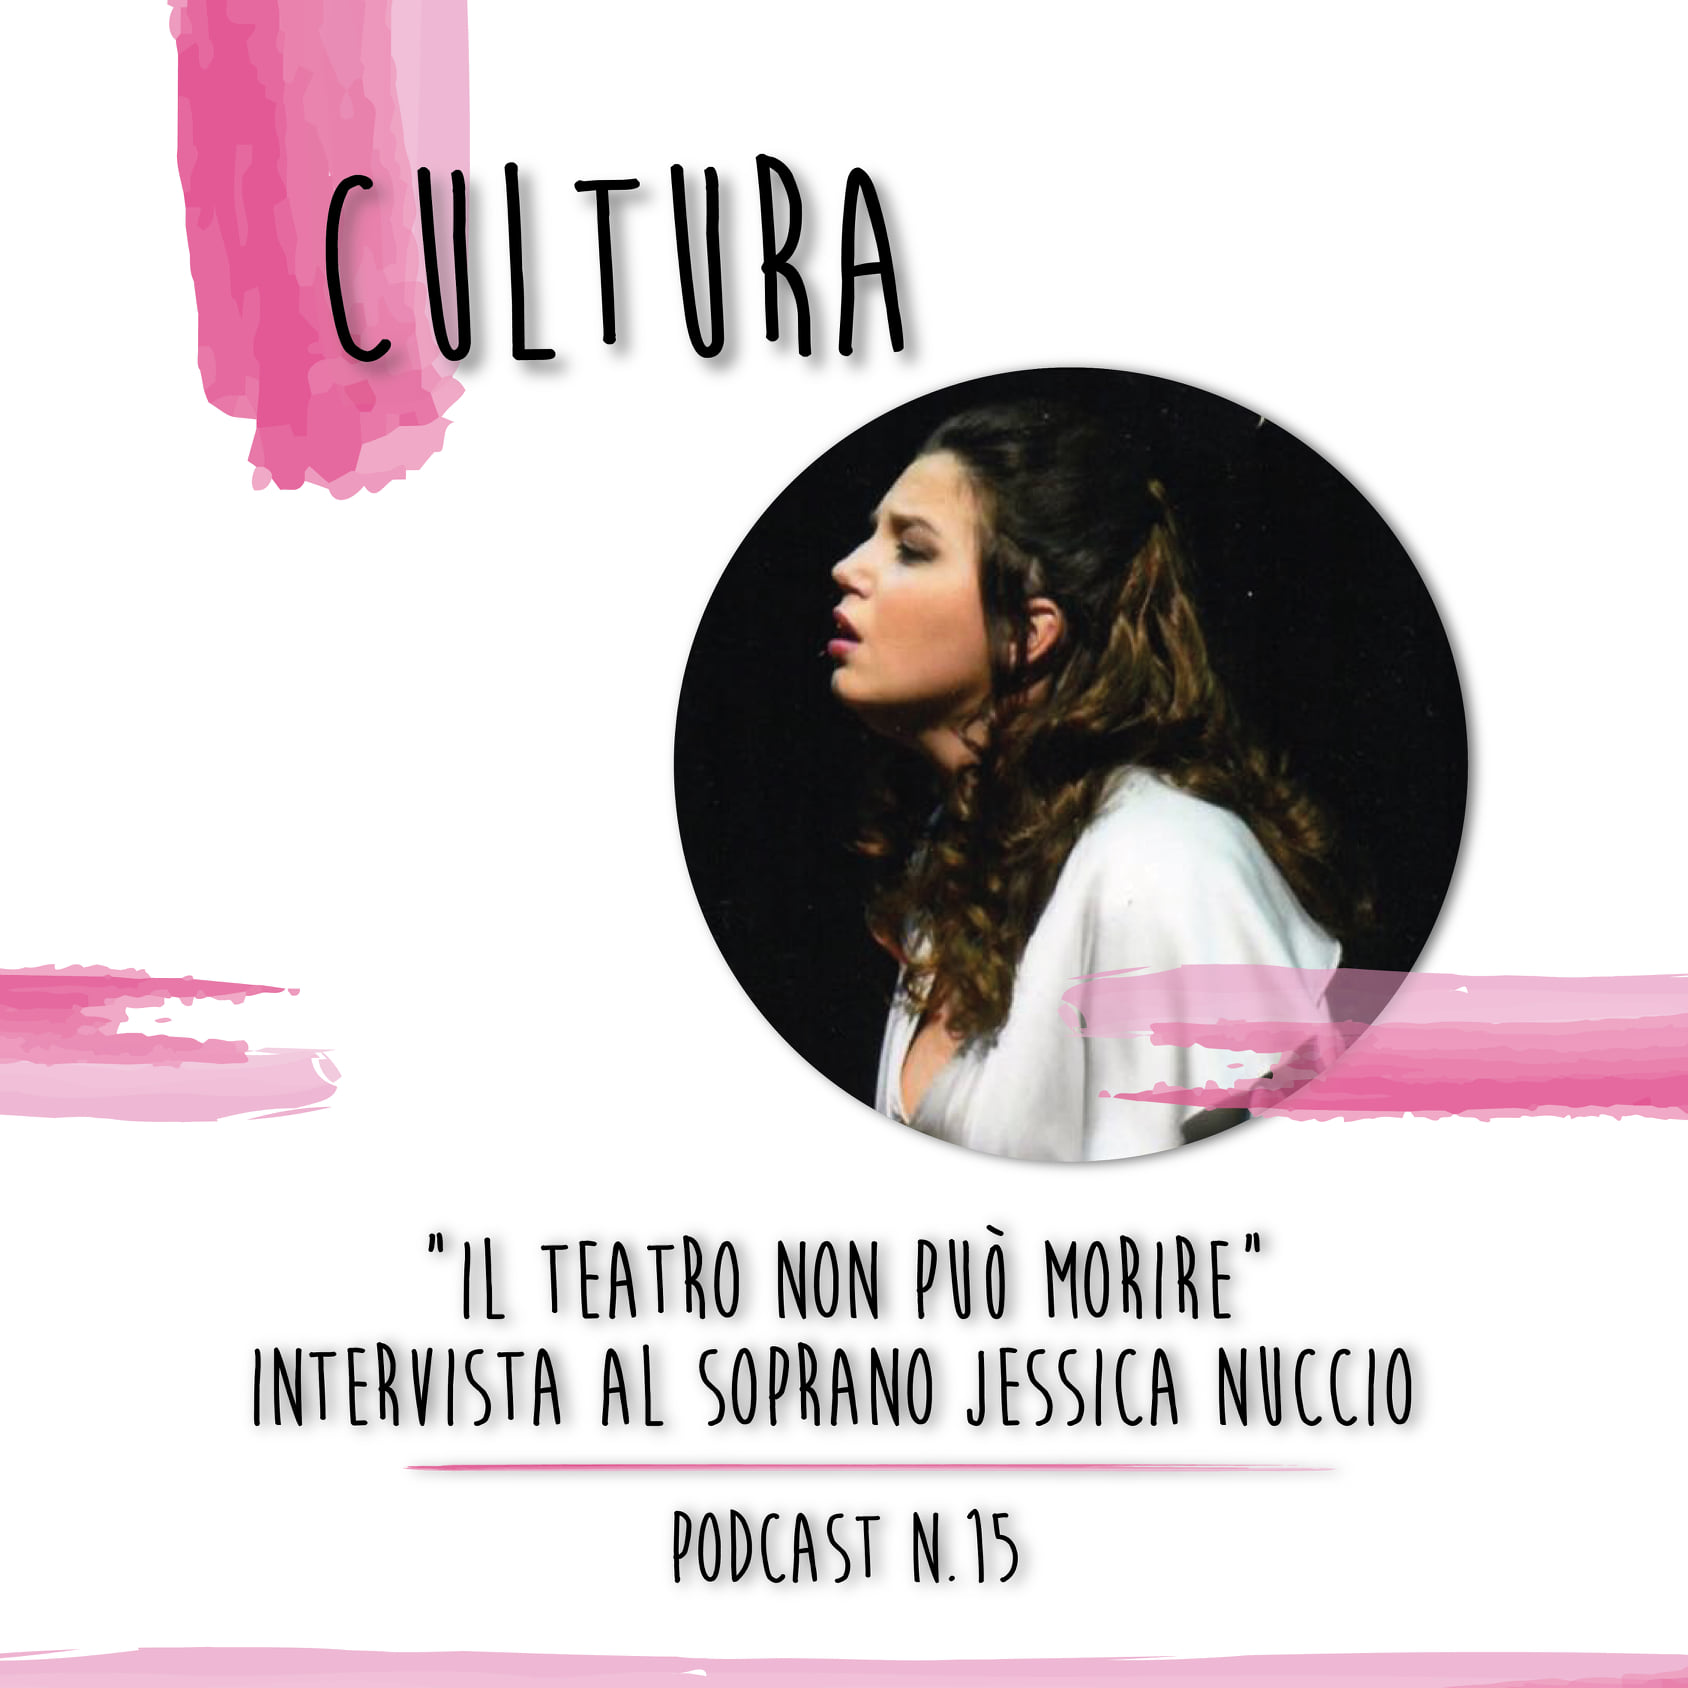 Podcast 15: Musica lirica, con Jessica Nuccio